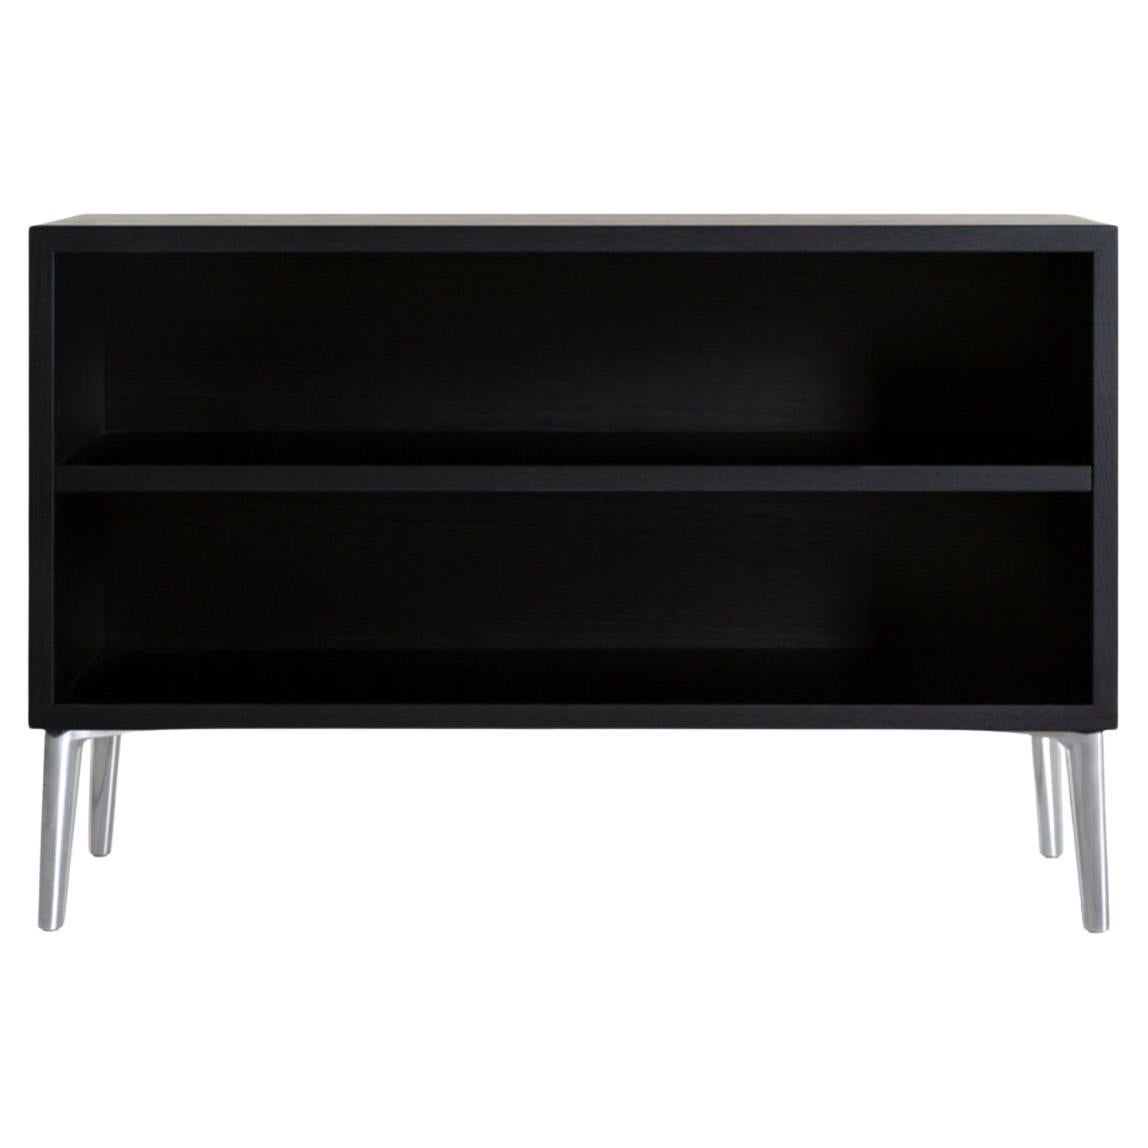 Moooi Sofa So Good Demi Double Shelf Black Stained Oak avec pieds en aluminium